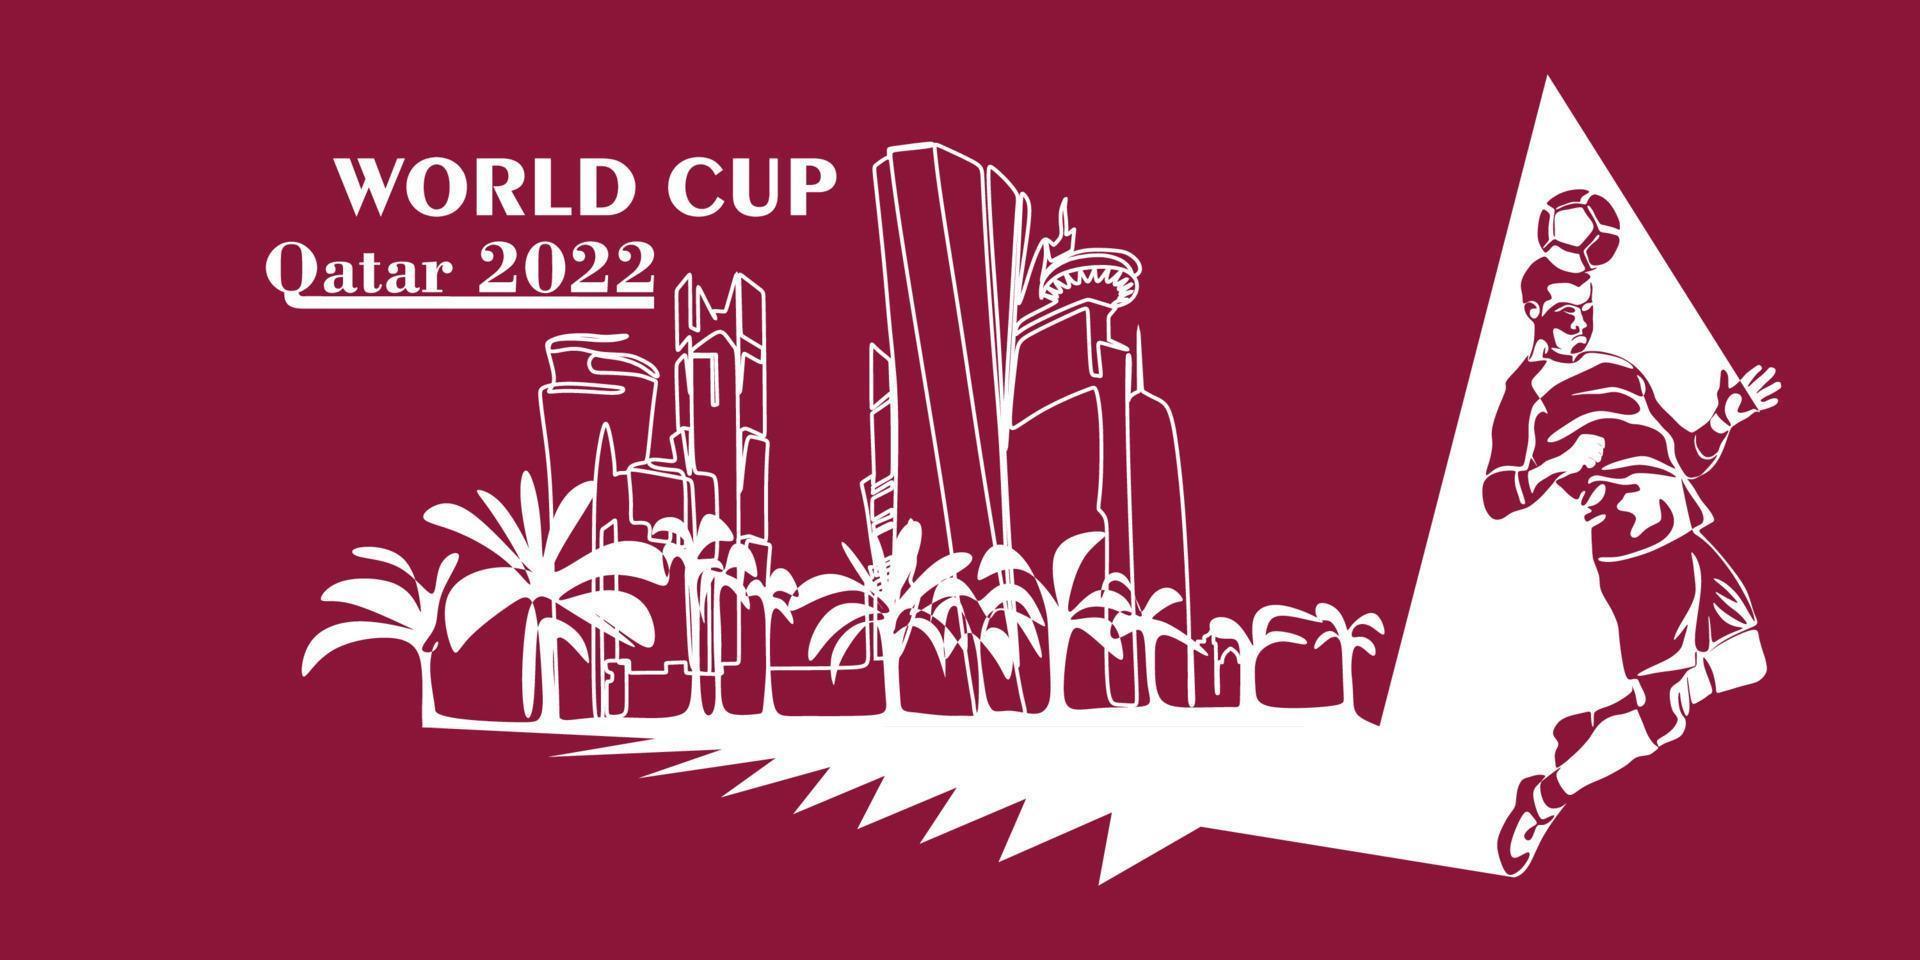 copa do mundo no catar em 2022 banner. vetor estilizado isolado ilustração moderna da capital doha cidade com símbolo, cores e bandeira